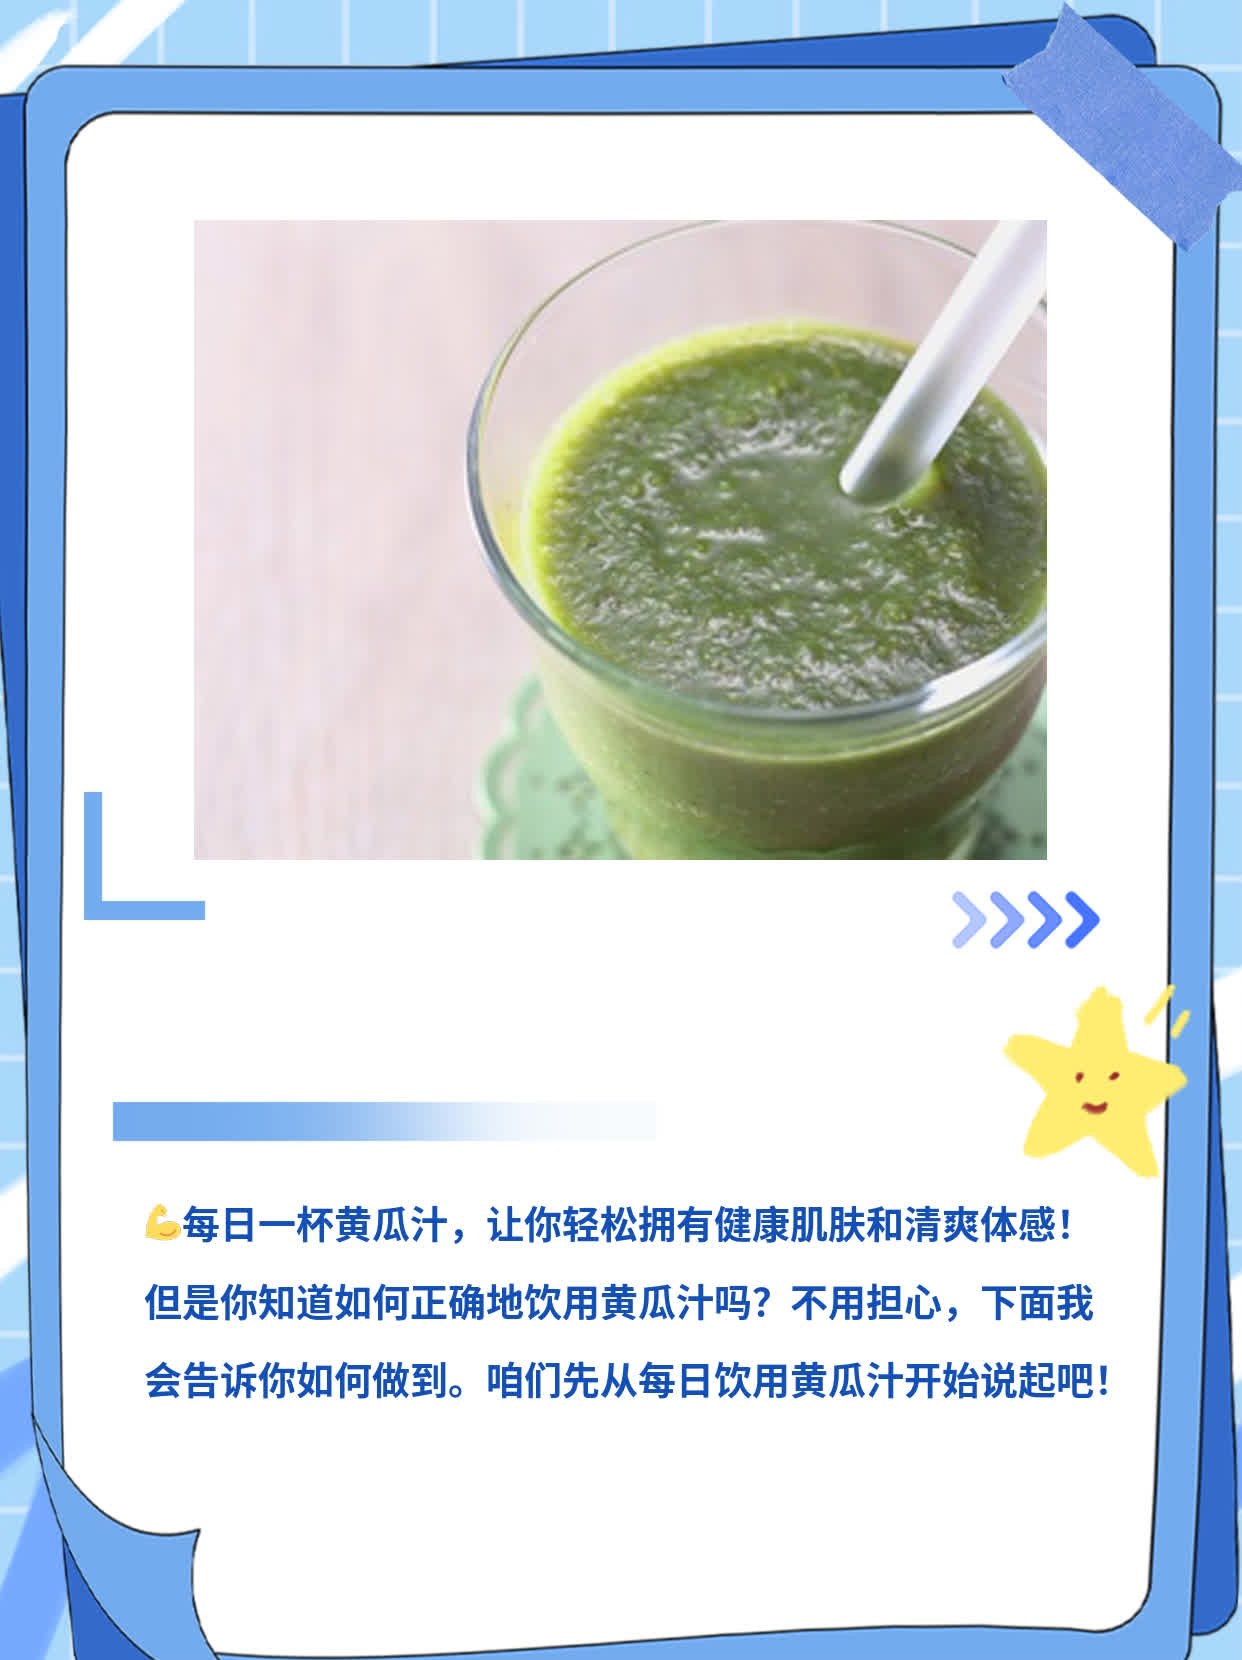 「每日一杯黄瓜汁」：轻松享受健康益处！